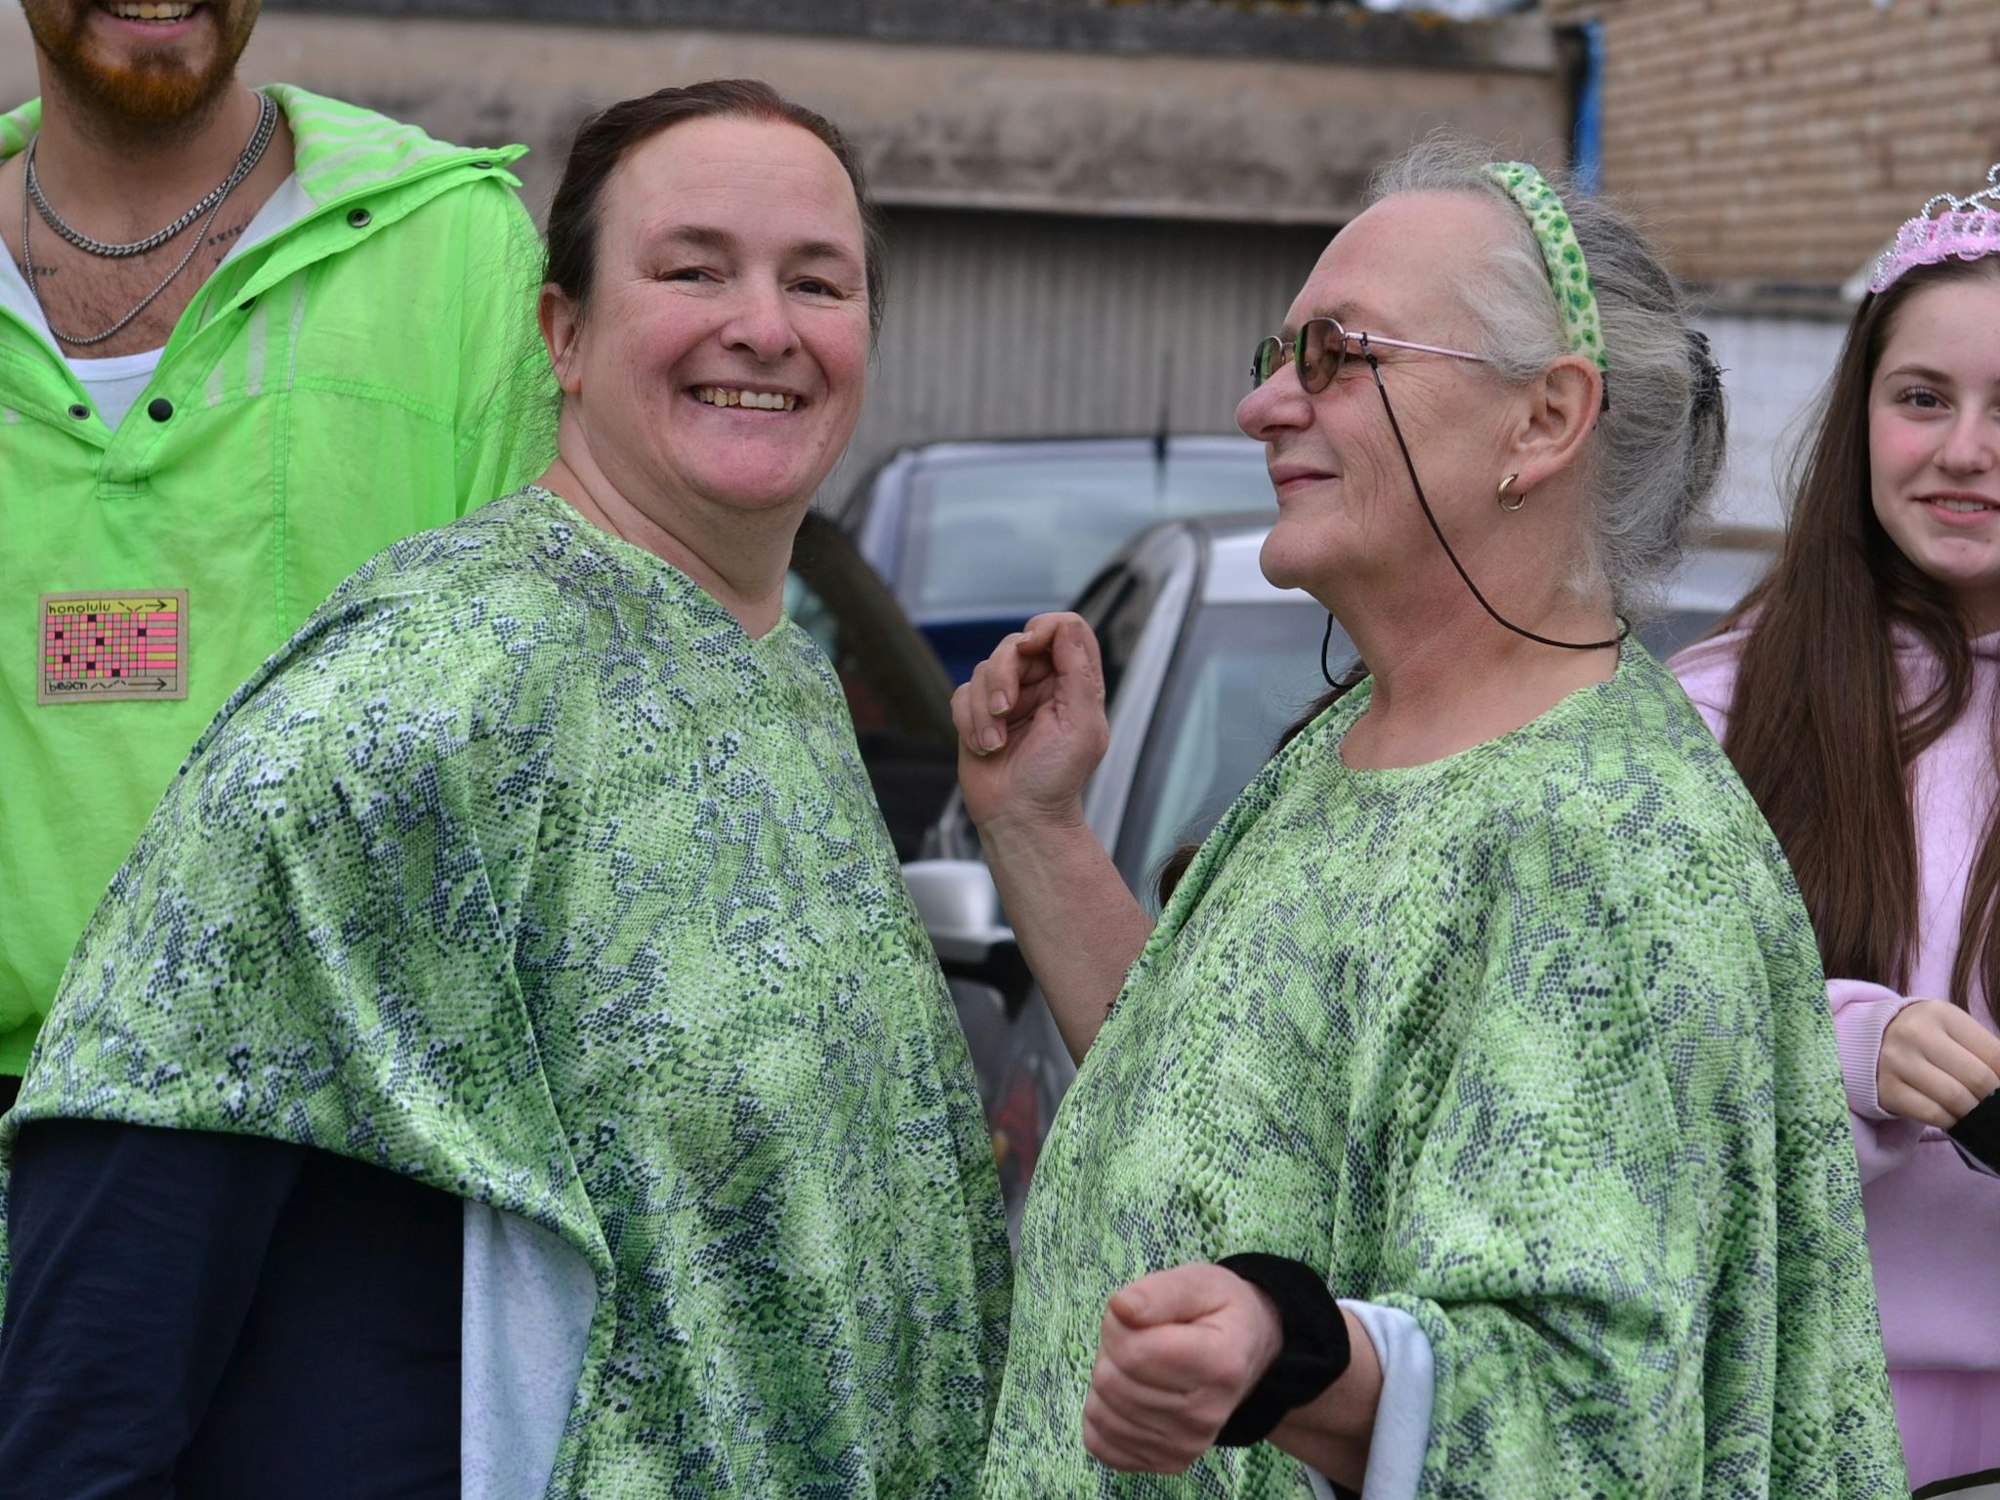 Freudestrahlend genossen die Mülheim/Wichtericher Jecken ihren Straßenkarneval. Zwei Frauen tragen grüne Umhänge und lachen.